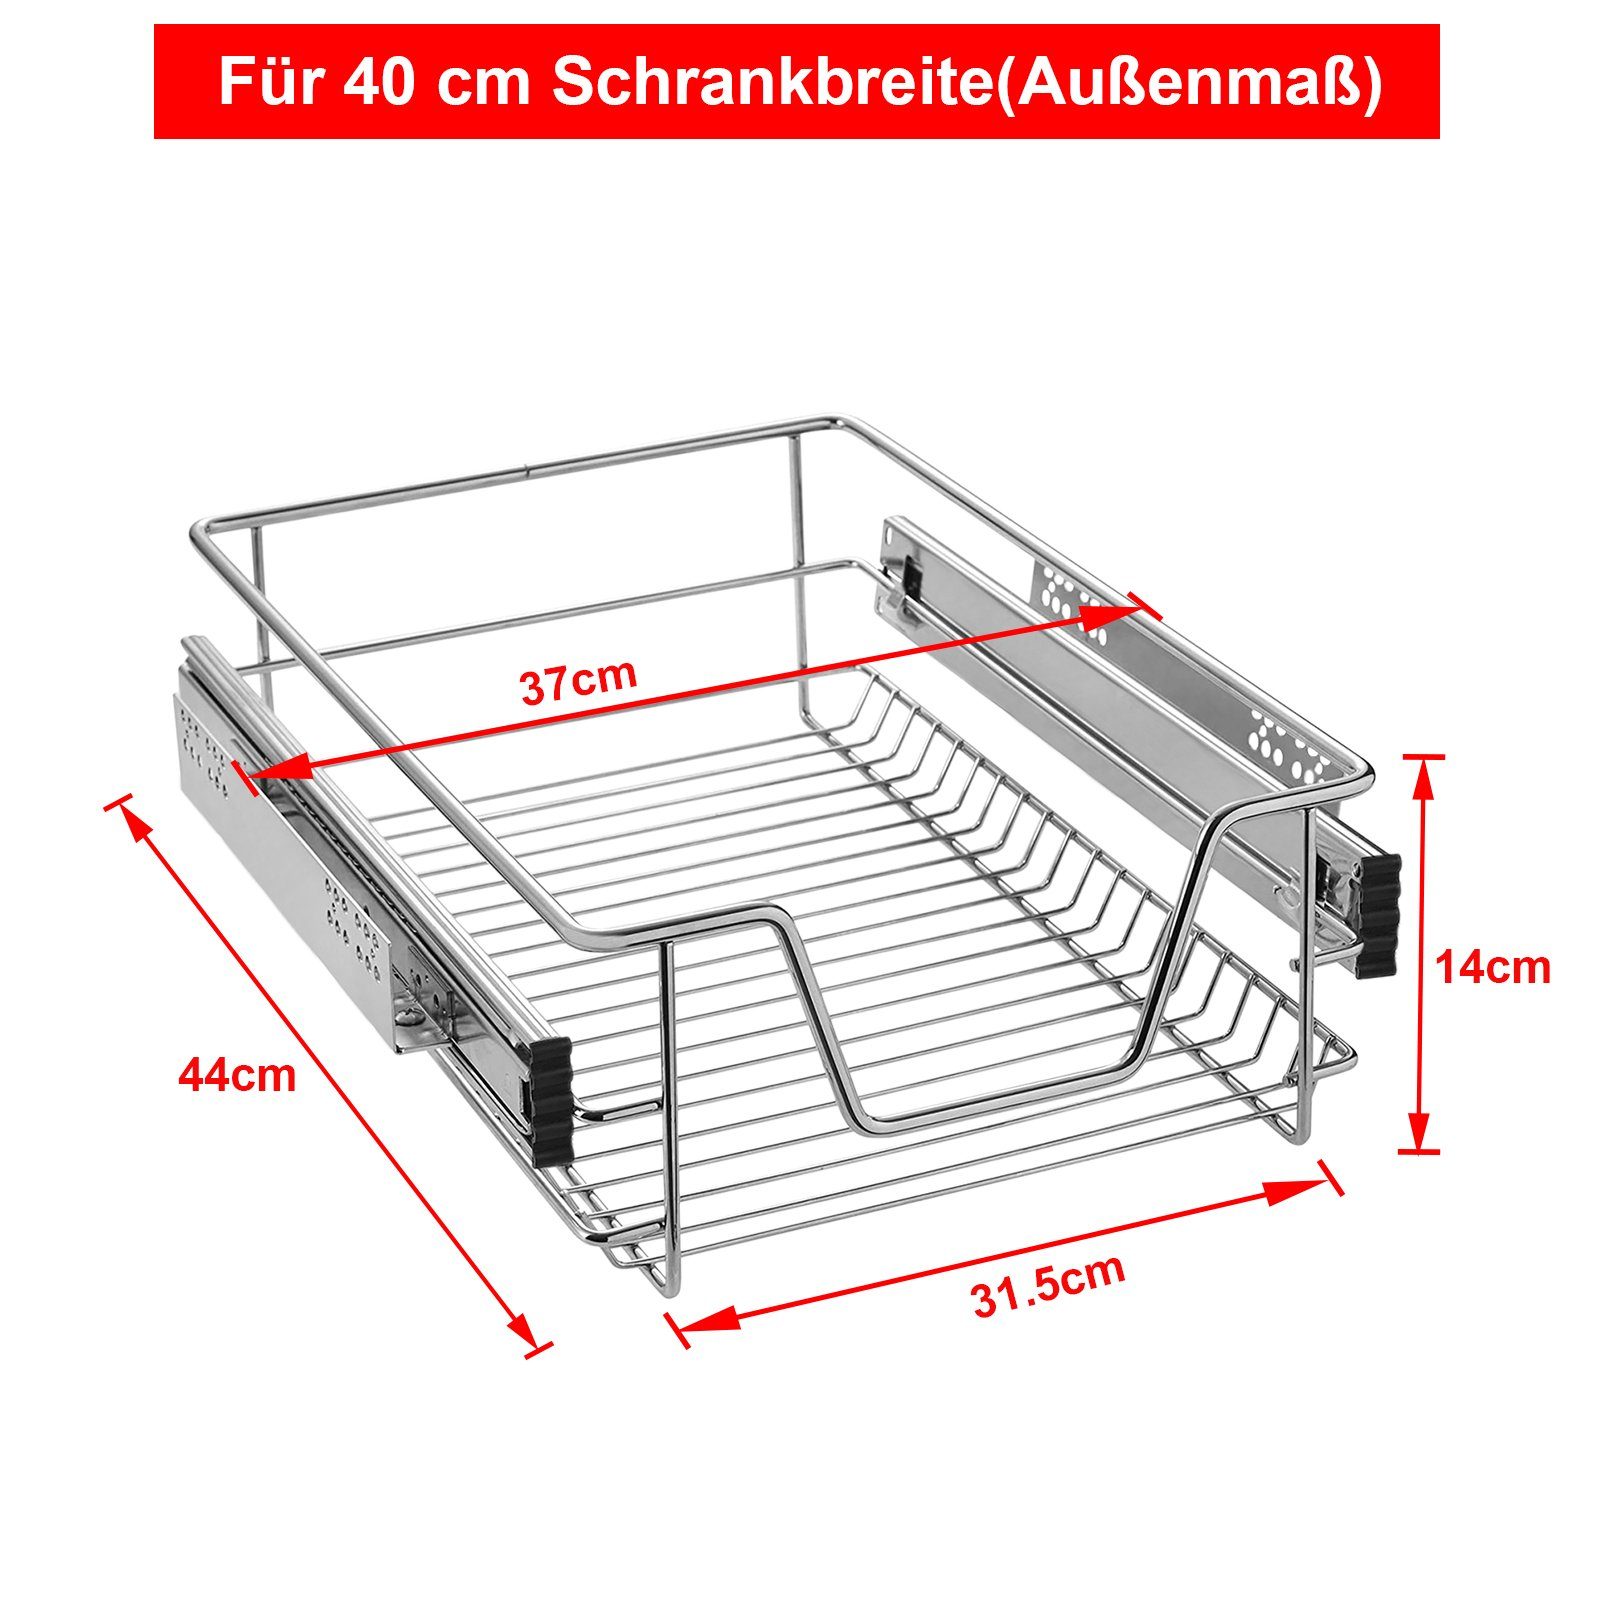 2x Teleskopschublade Küchenschublade Korbauszug Schublade für 30cm Schrankbreite 